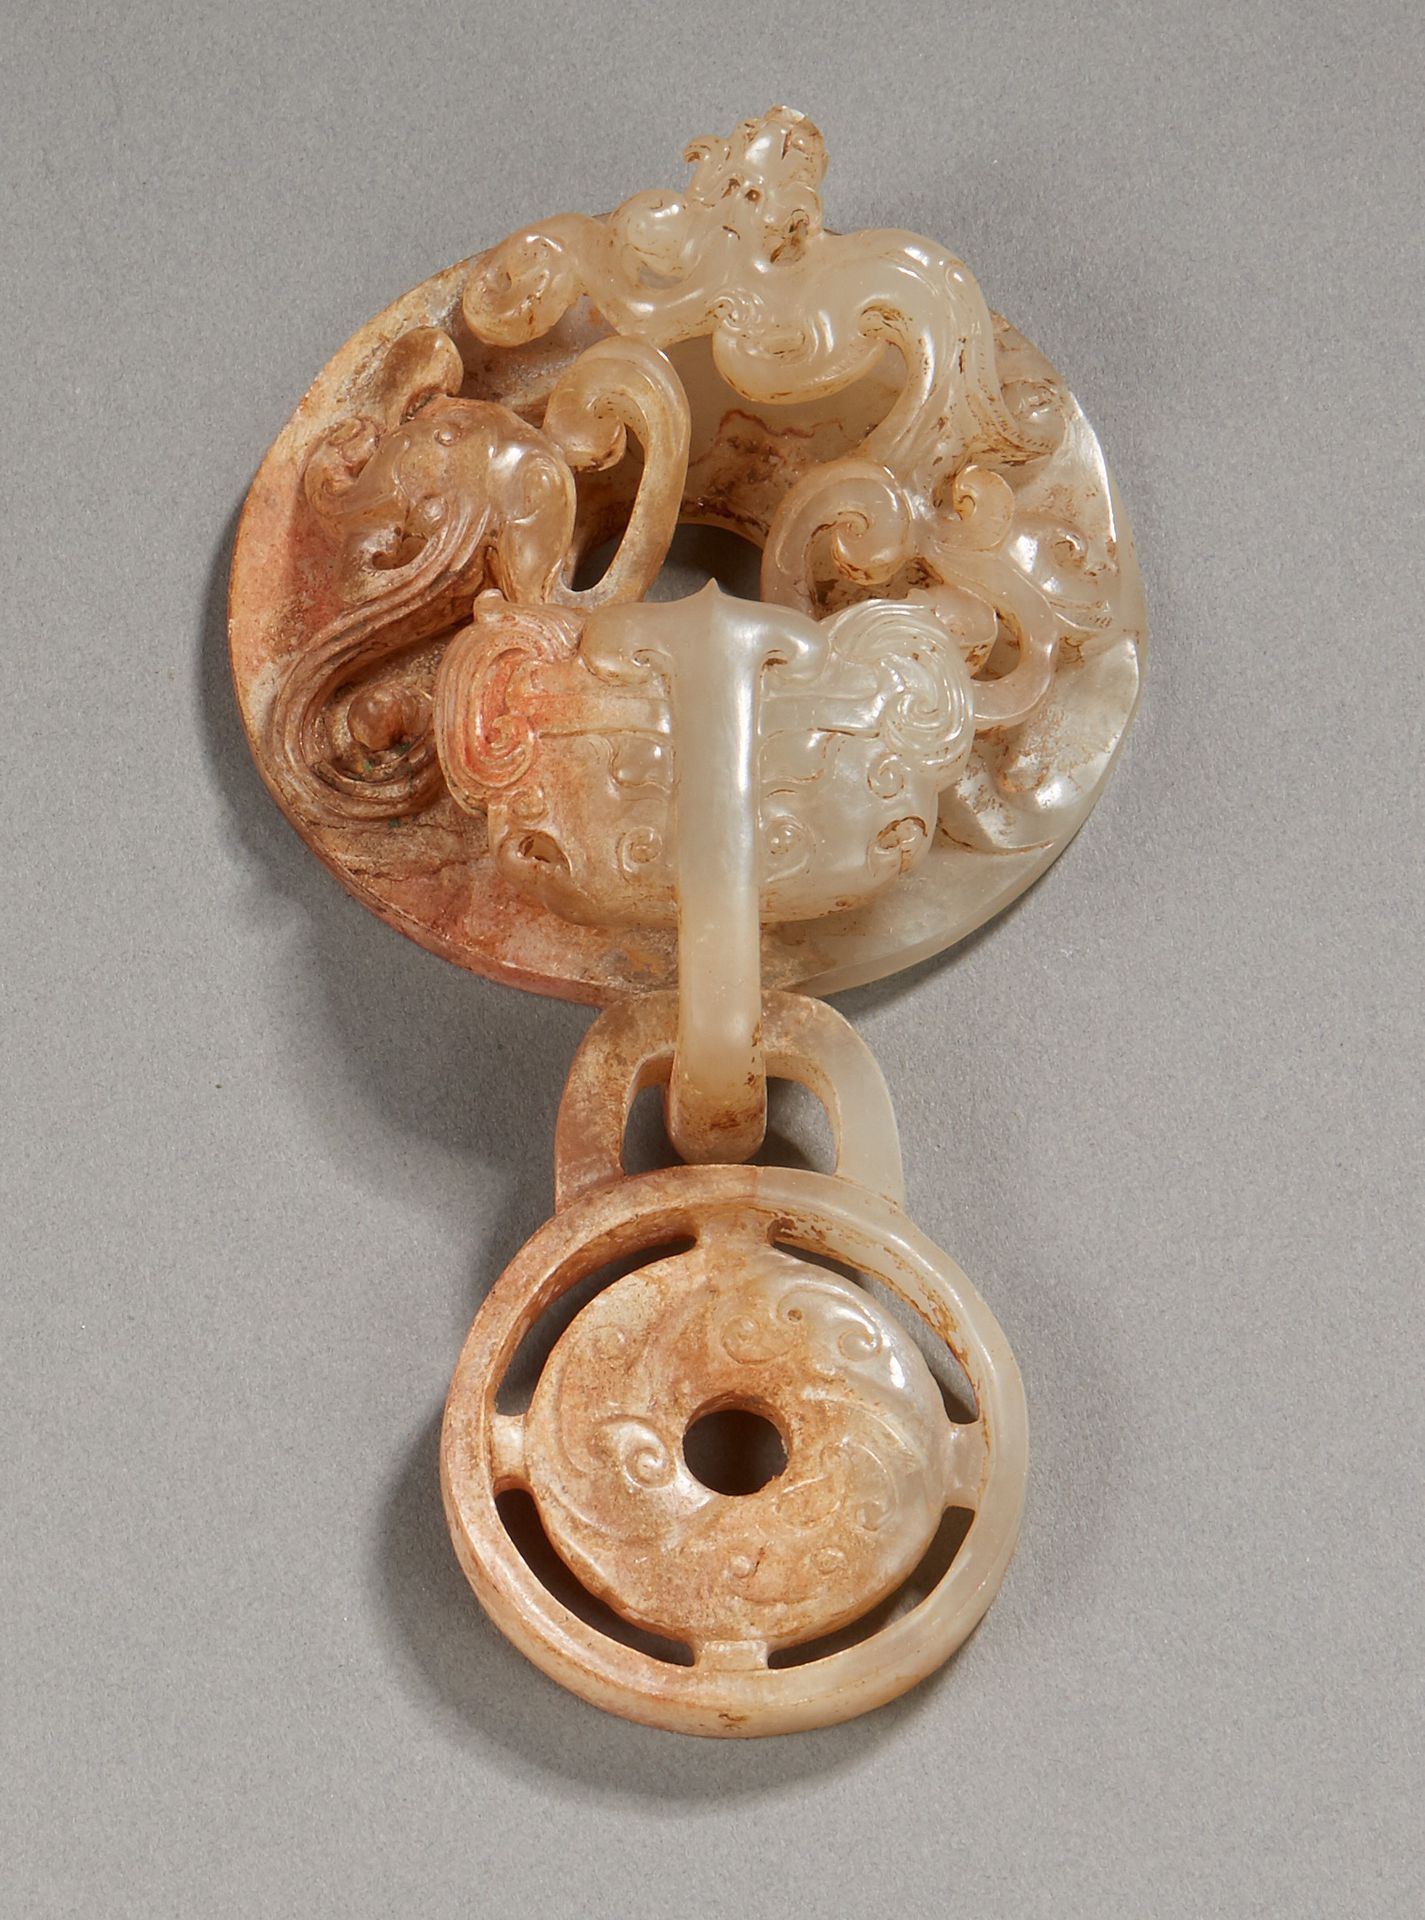 Null 中国


一个高浮雕的透明玉石双带扣或胸带扣，在饕餮面具旁边有两个对立的麒麟，旁边还有一个镂空的奖章。


古代风格的古董作品。


直径14.5厘米